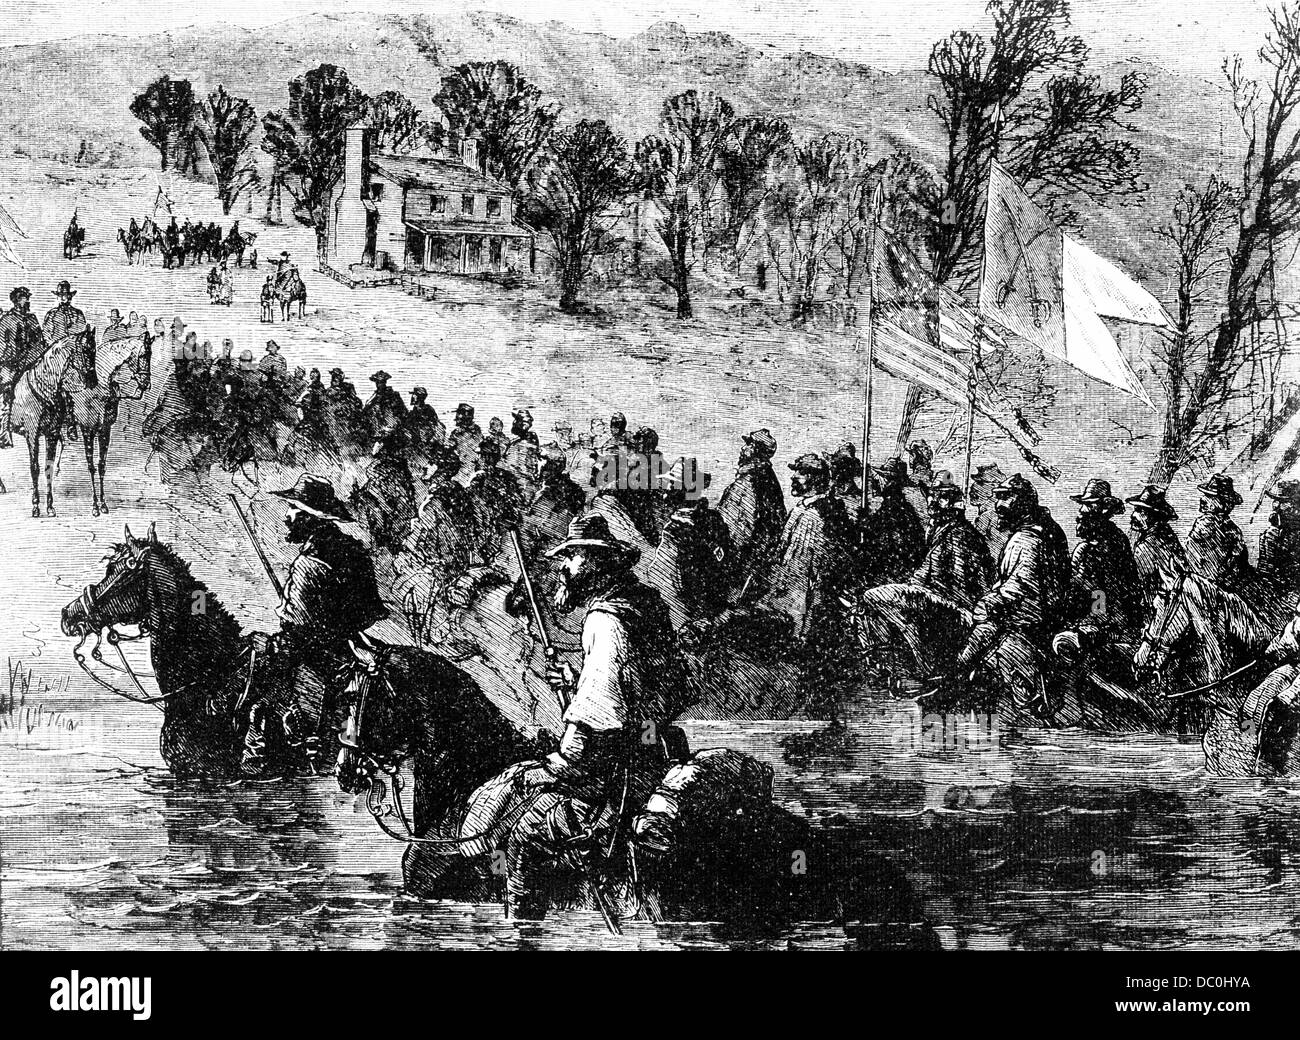 1800 1860 SEPTIEMBRE 1864 GENERAL PHIL SHERIDAN CABALLERÍA FISHER'S HILL VIRGINIA comenzó la quema de tierra arrasada Shenandoah Valley Foto de stock